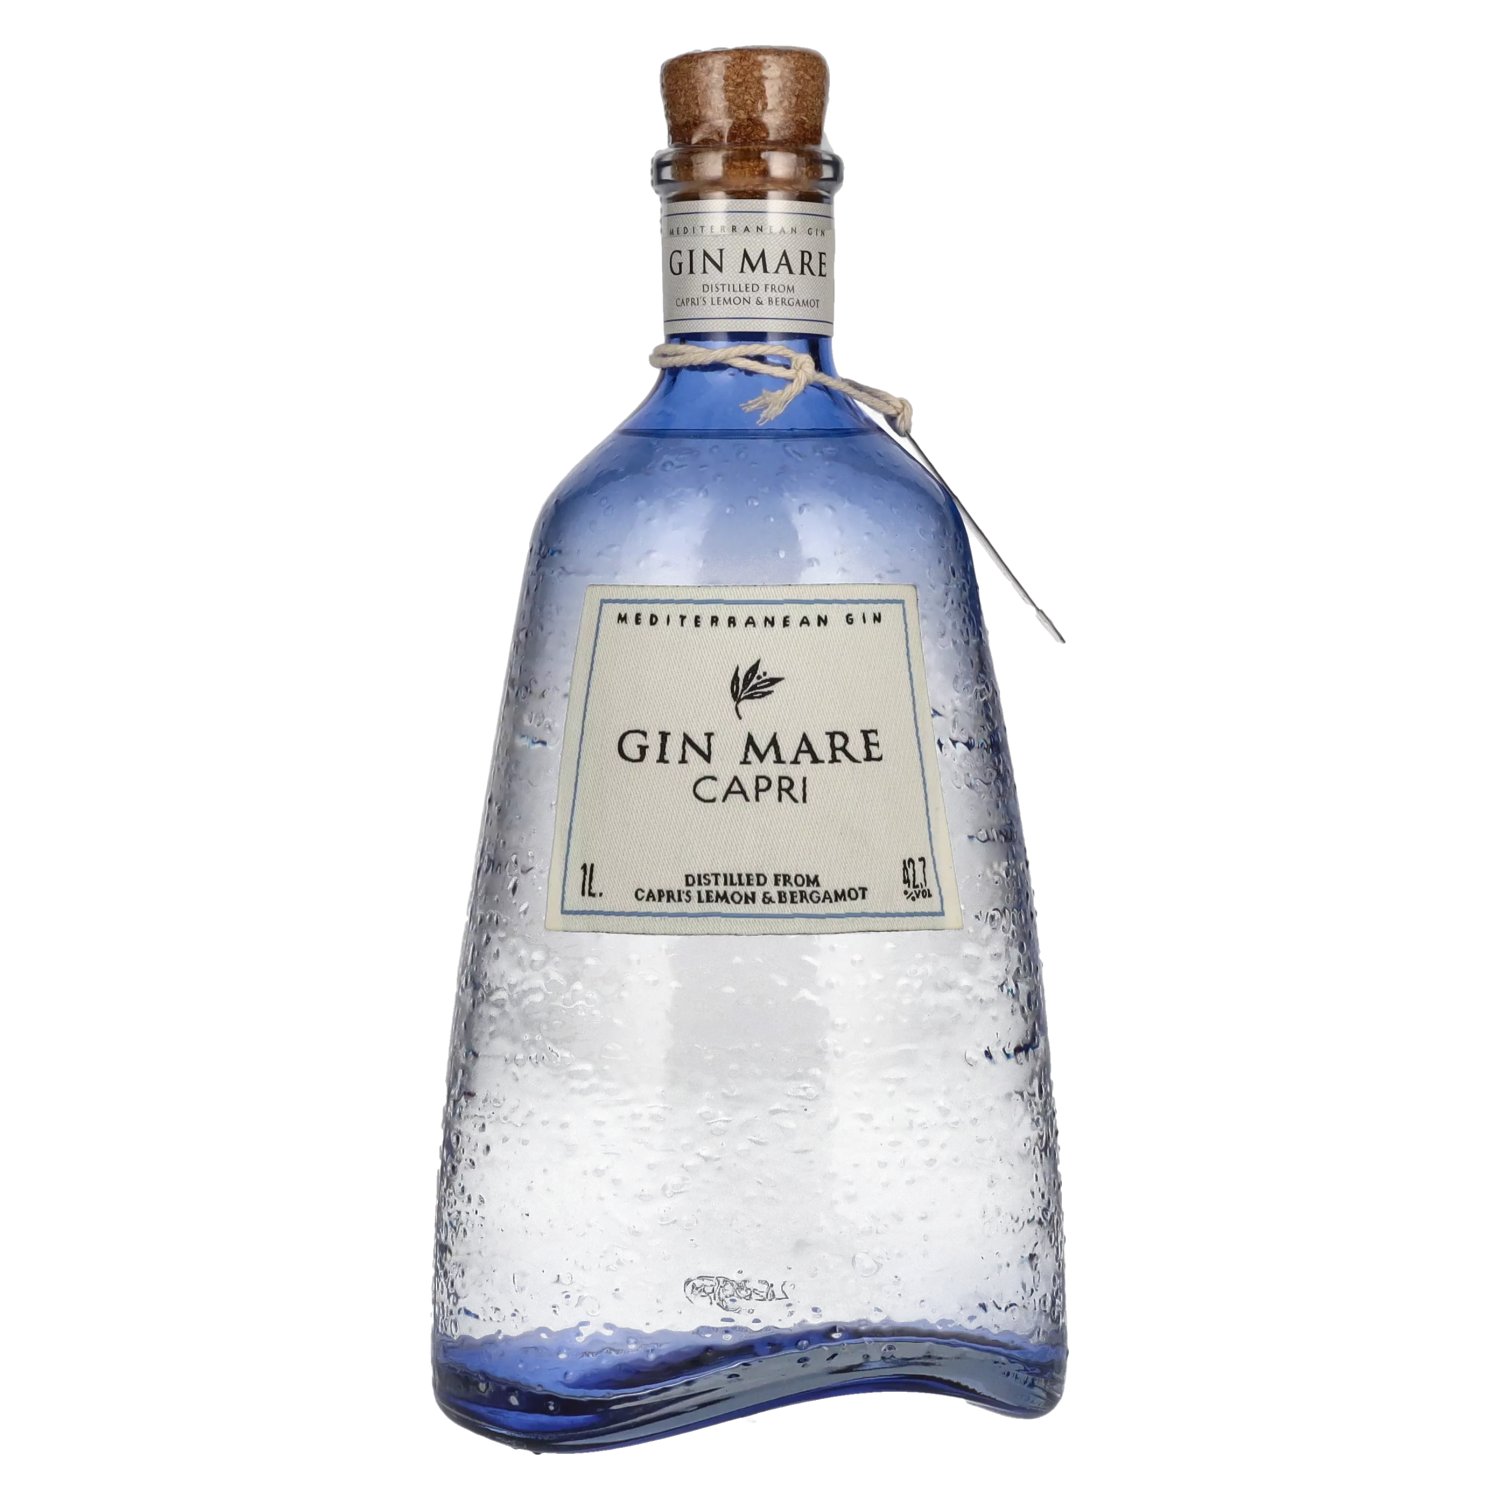 Gin Mare Edition 1l Limited Mediterranean Vol. Capri 42,7% Gin